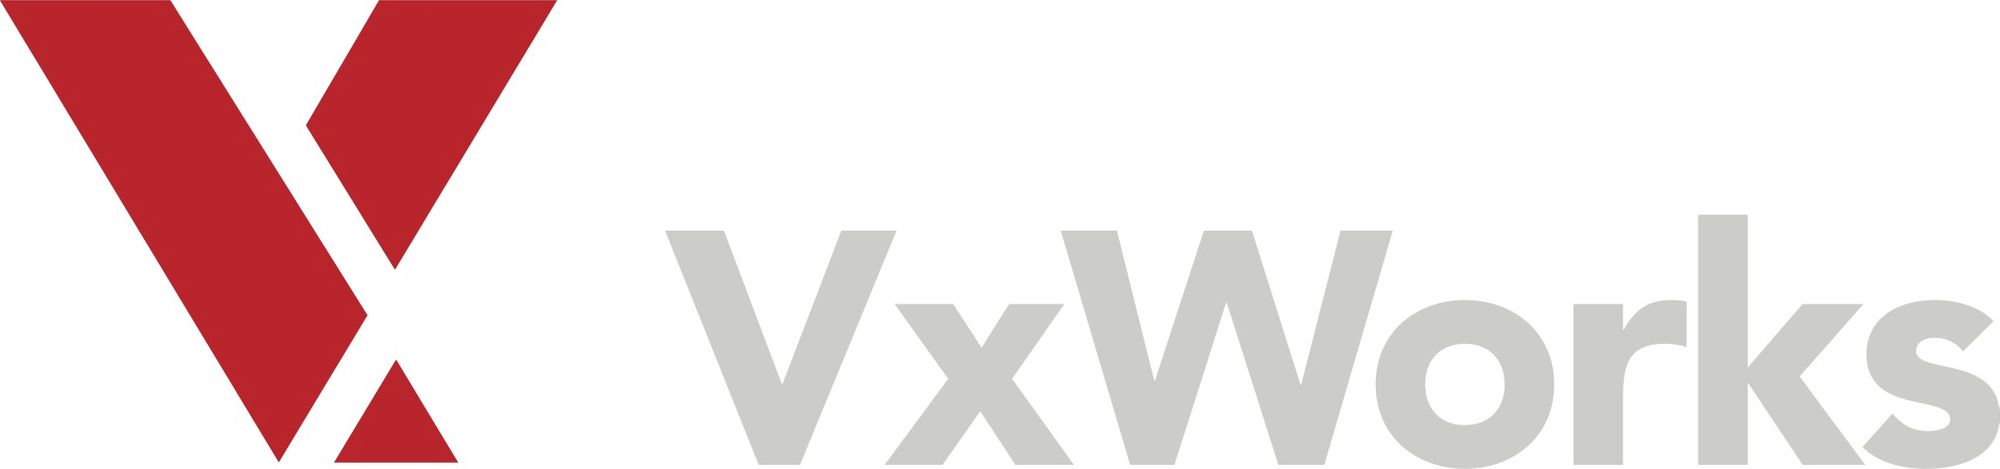 WIND RIVER VxWorks